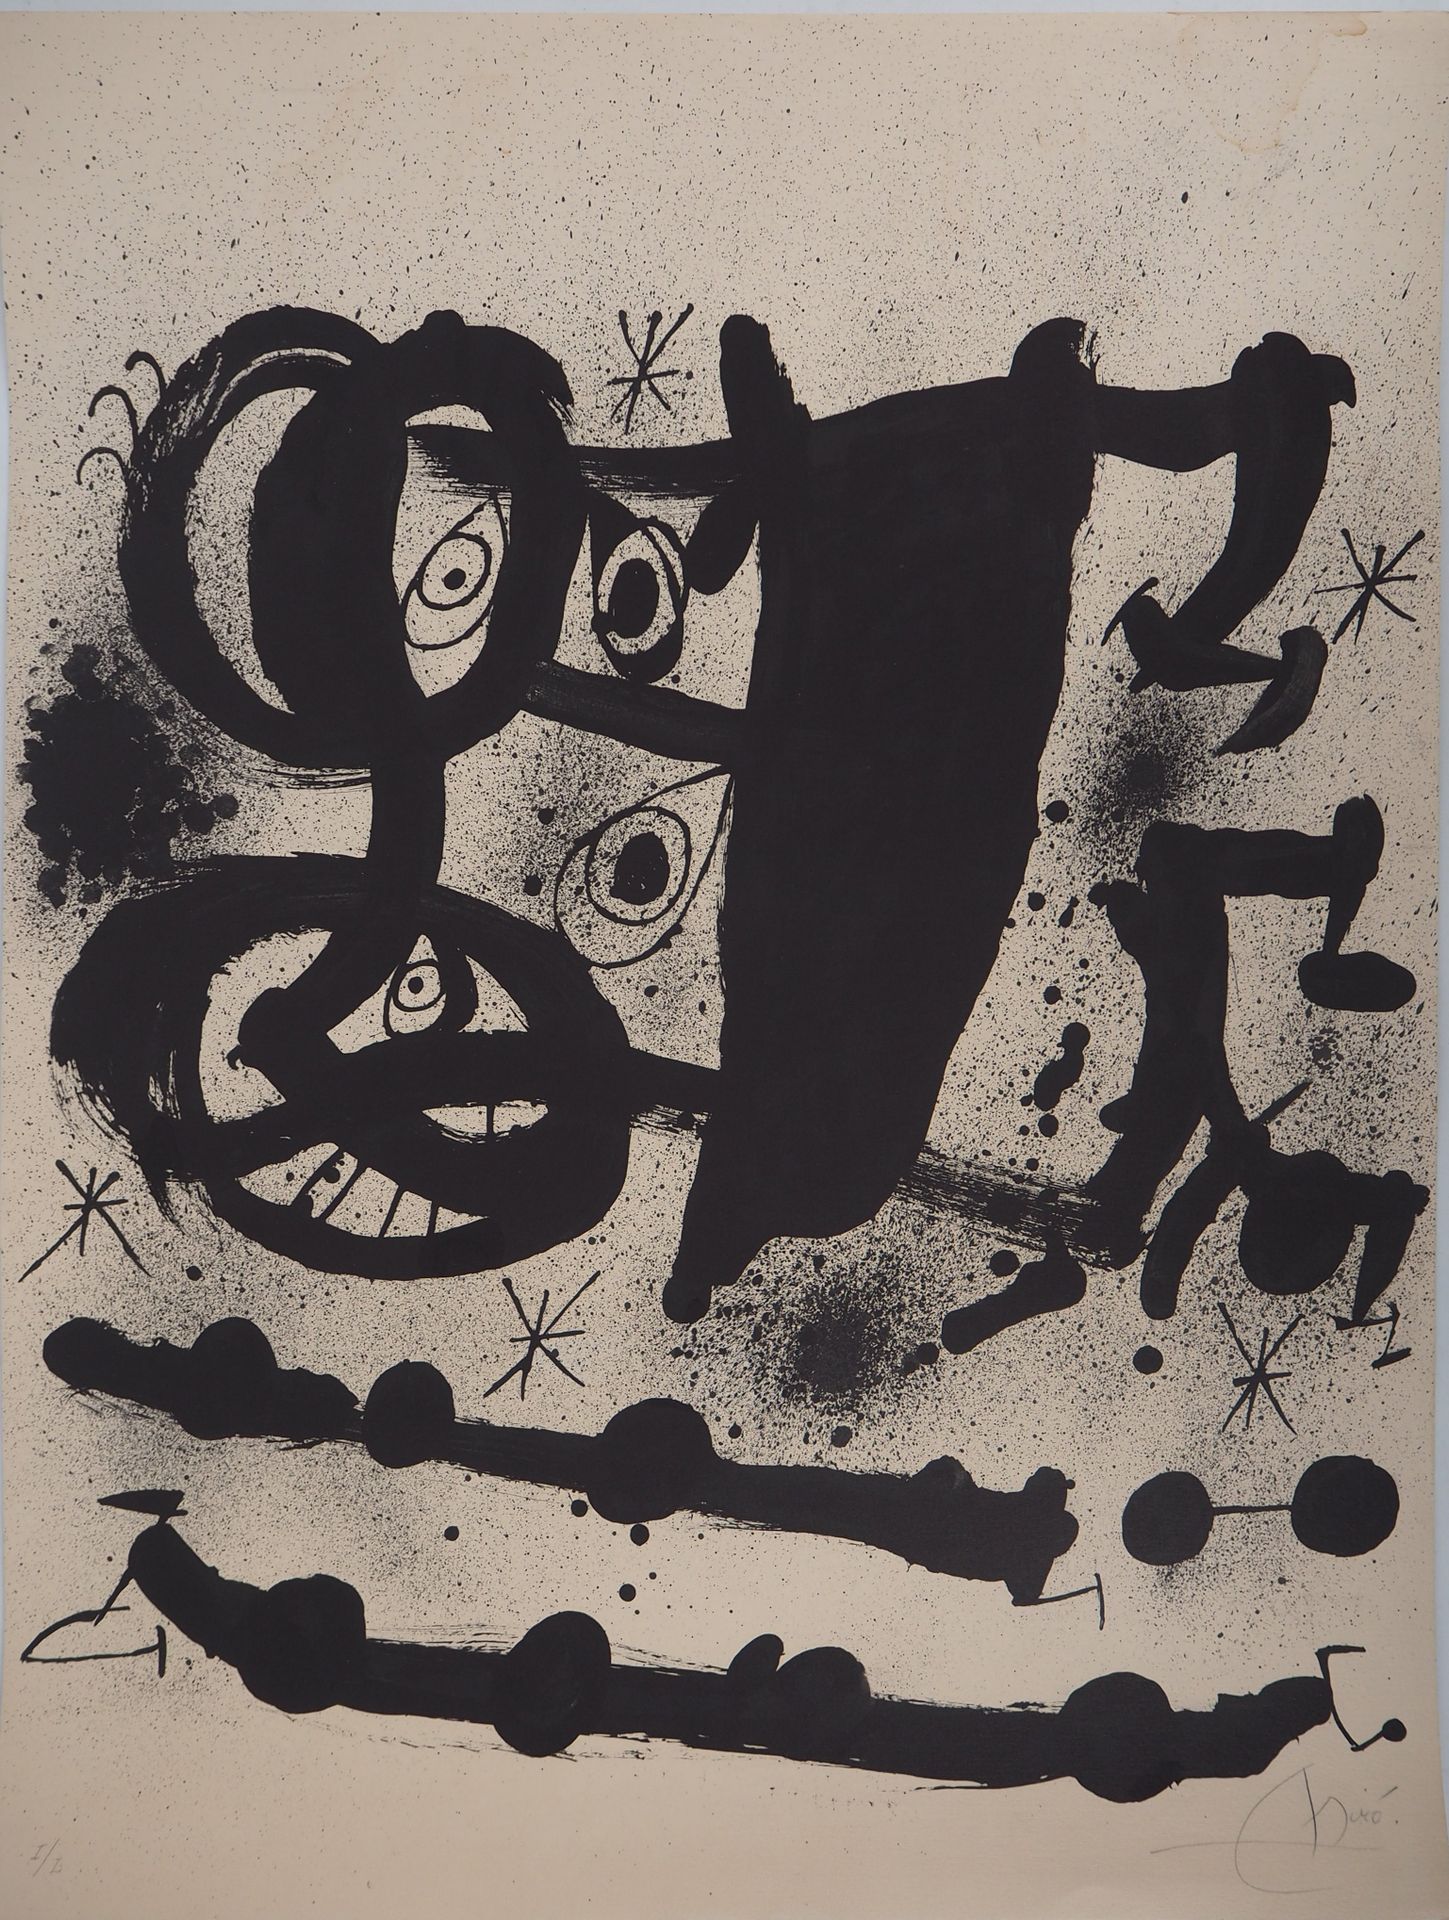 Joan Miro 琼-米罗(1893-1983)

超现实主义的脸

原始石版画

用铅笔签名

牛皮纸上 75 x 58 厘米

限量50份（罗马数字）。
&hellip;